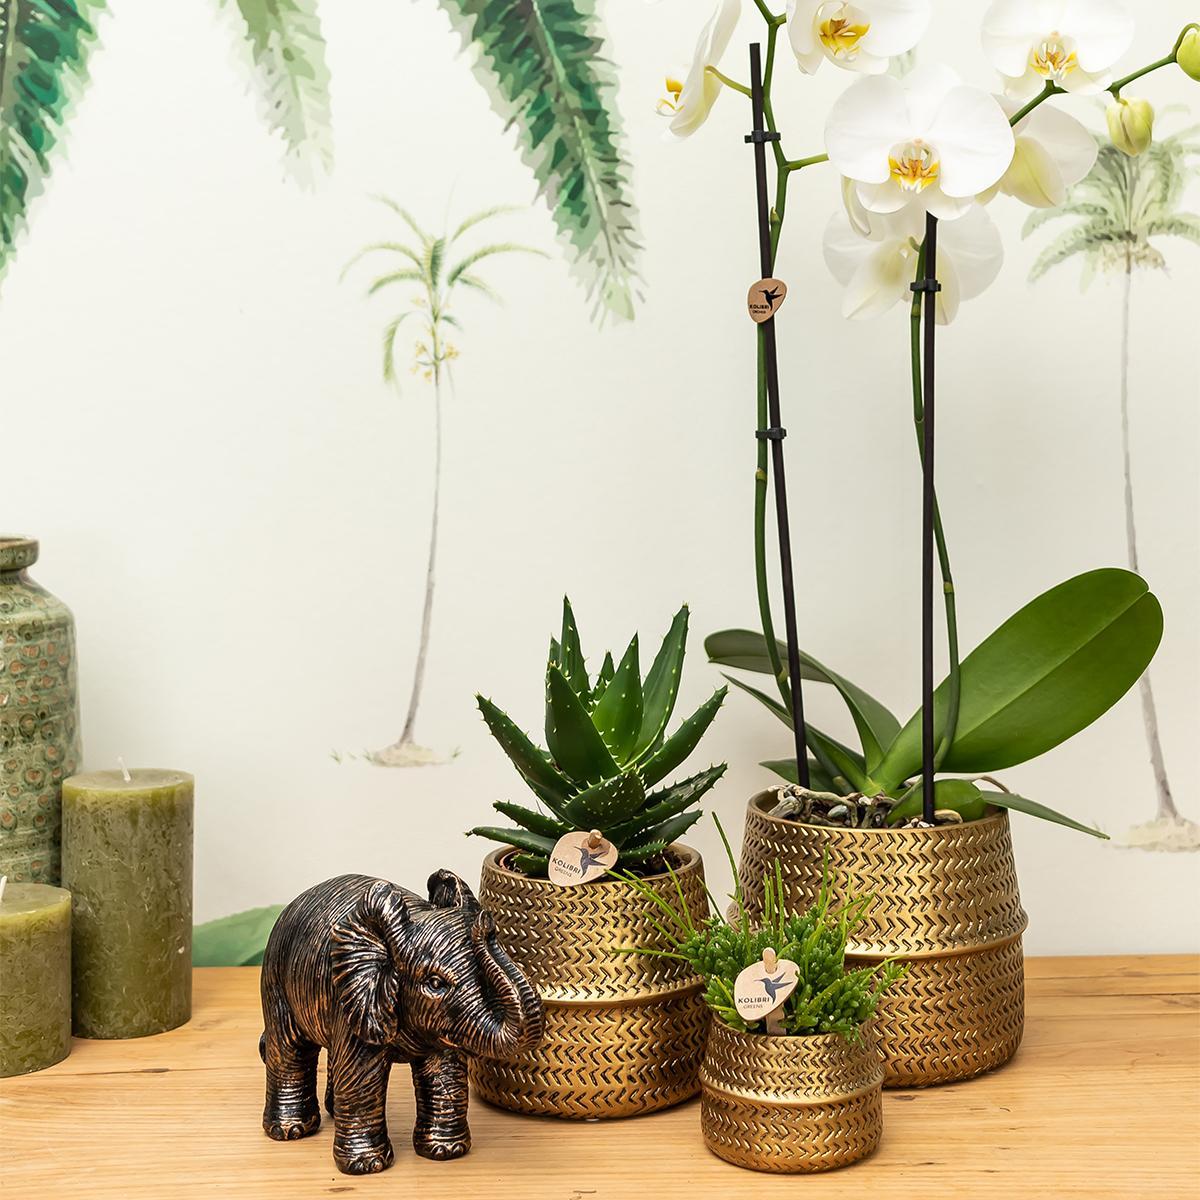 Planten set Groove goud bevat een witte Phalaenopsis orchidee Amabilis met een diameter van 9 cm en een groene Succulent Crassula Ovata met een diameter van 6 cm. Deze set wordt geleverd inclusief gouden keramieken sierpotten.